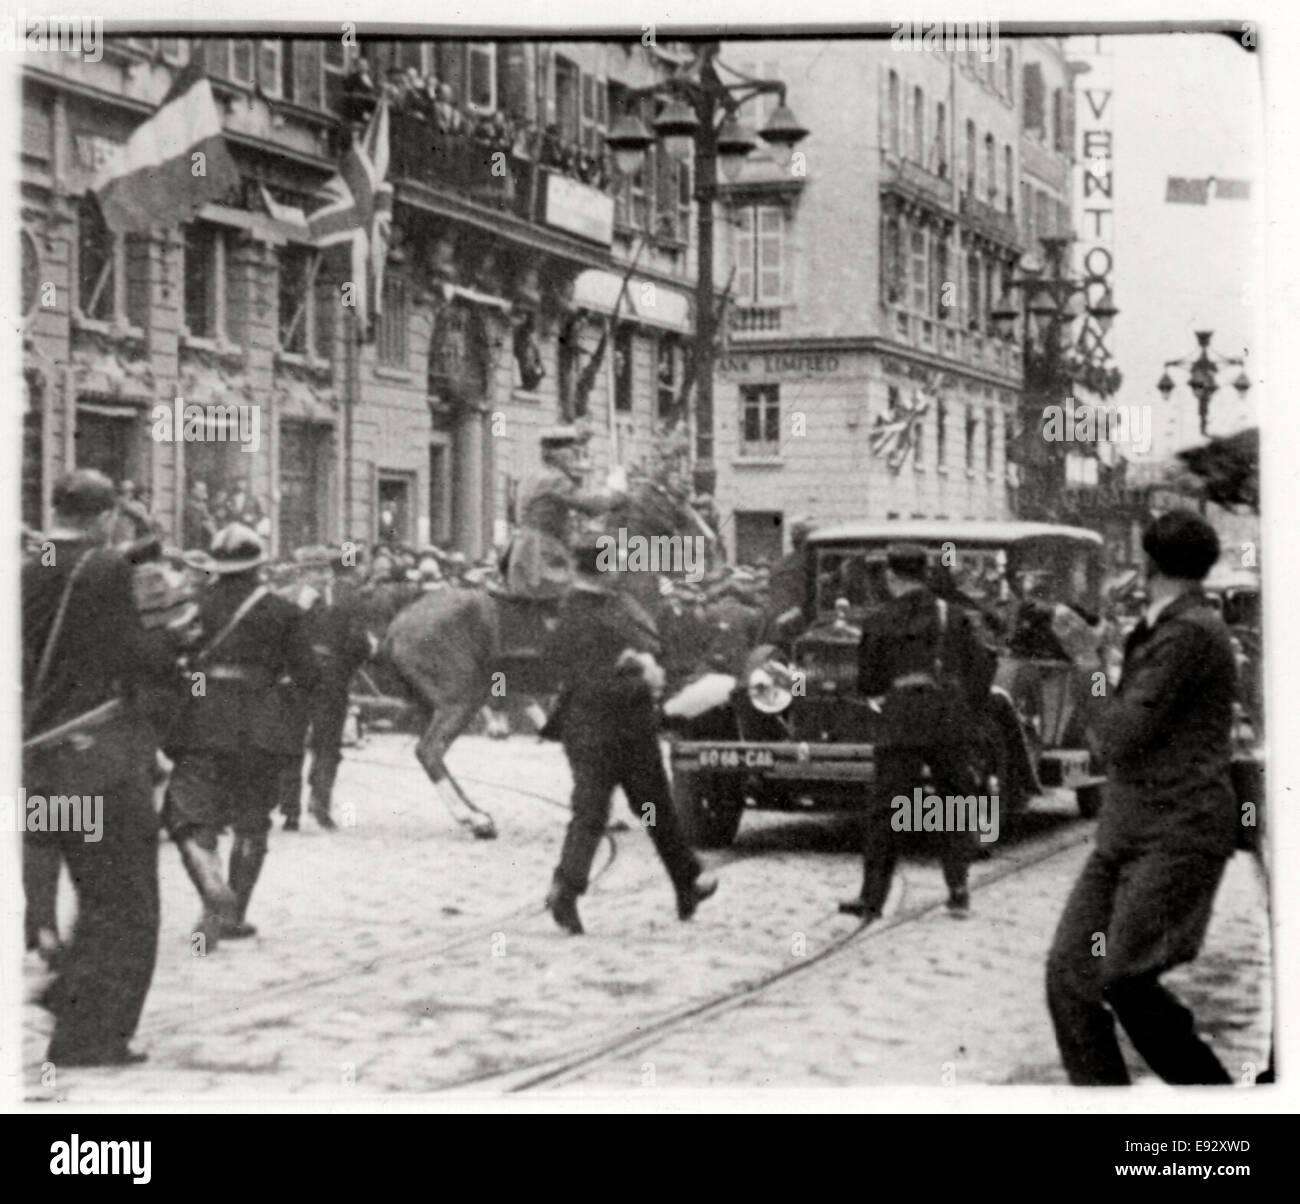 1934-CORRIERE PADANO-Assassinio di RE ALESSANDRO DI JUGOSLAVIA-Marsiglia-10 ott. 